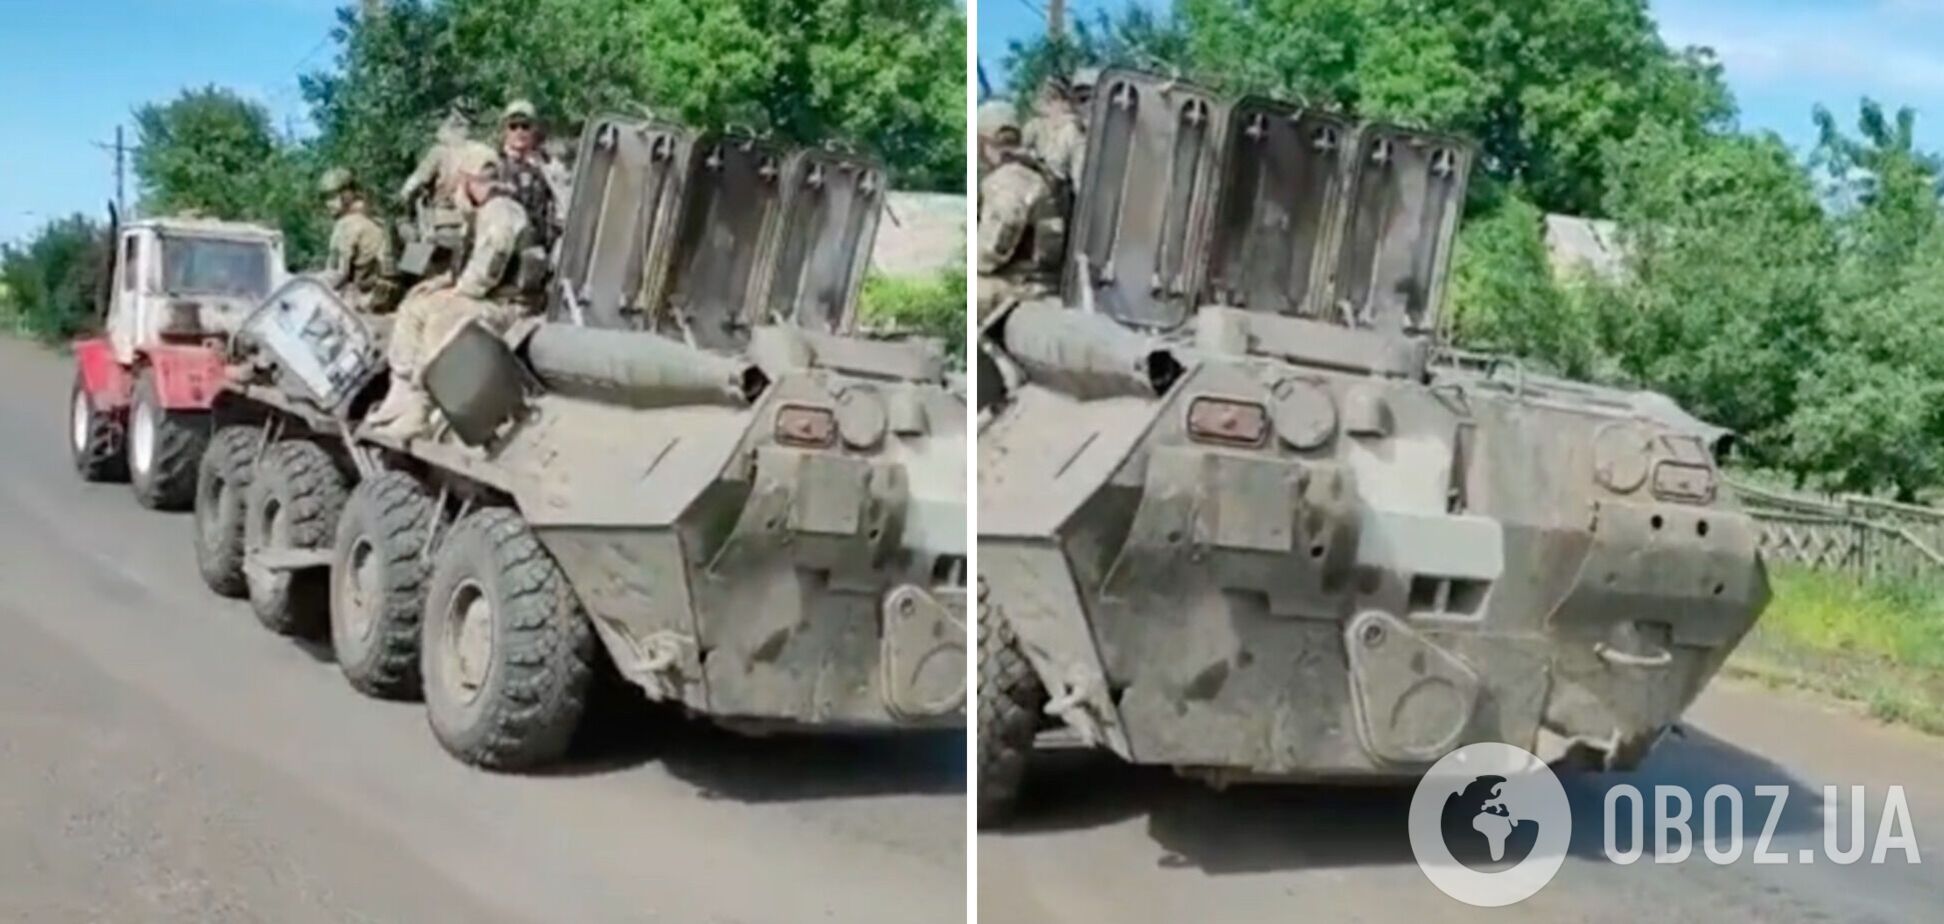 'Тракторные войска в деле': в сети показали видео с новым трофеем украинских защитников